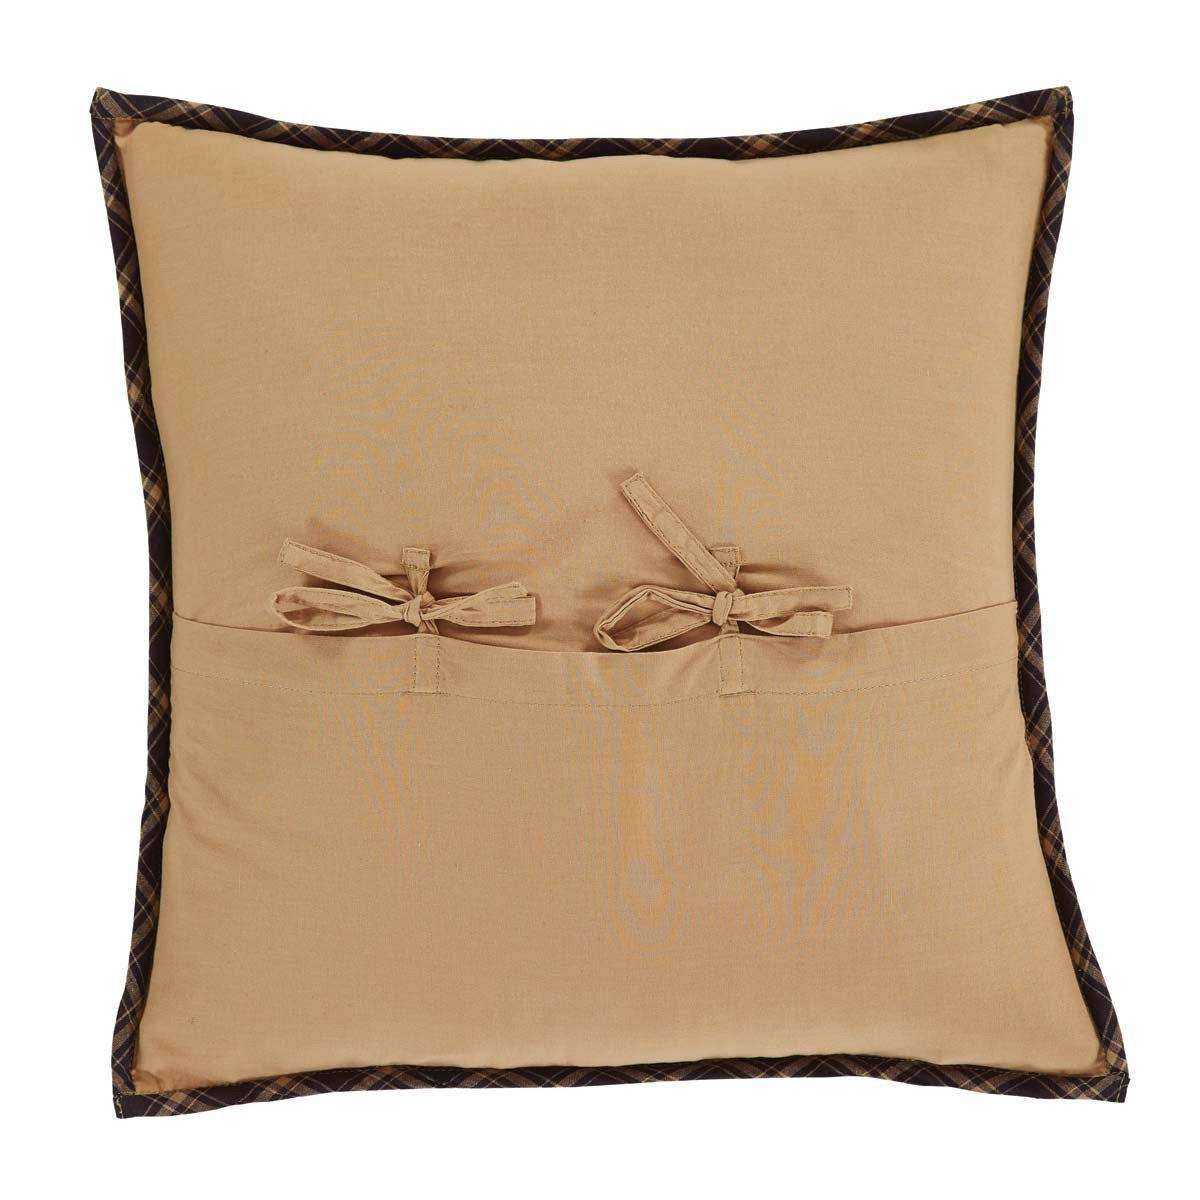 Dakota Star Quilted Pillow 16x16 Pillows VHC Brands 